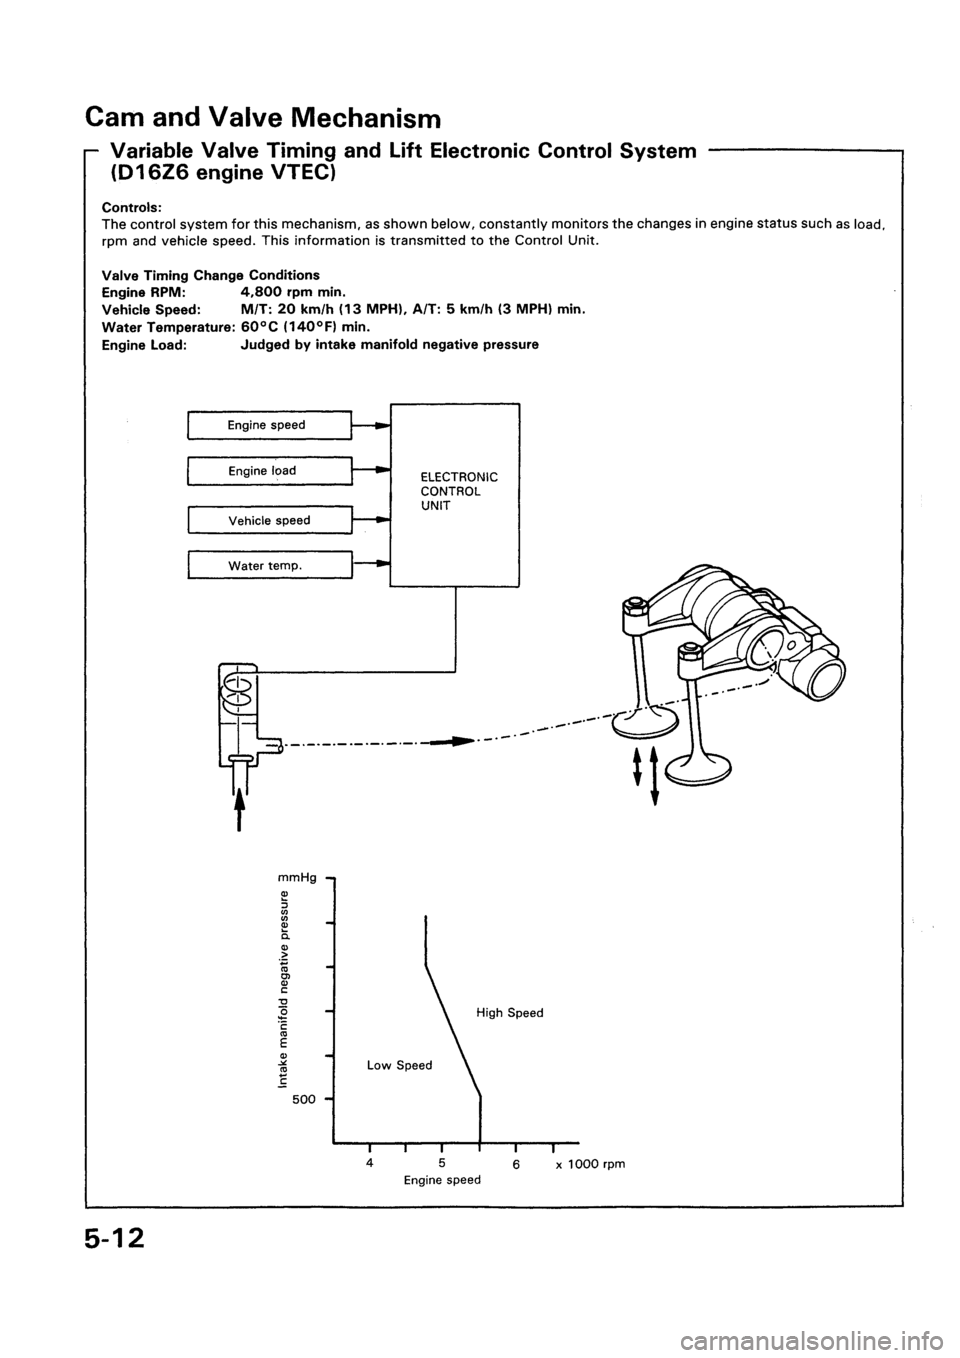 HONDA CIVIC 1992 5.G Repair Manual 